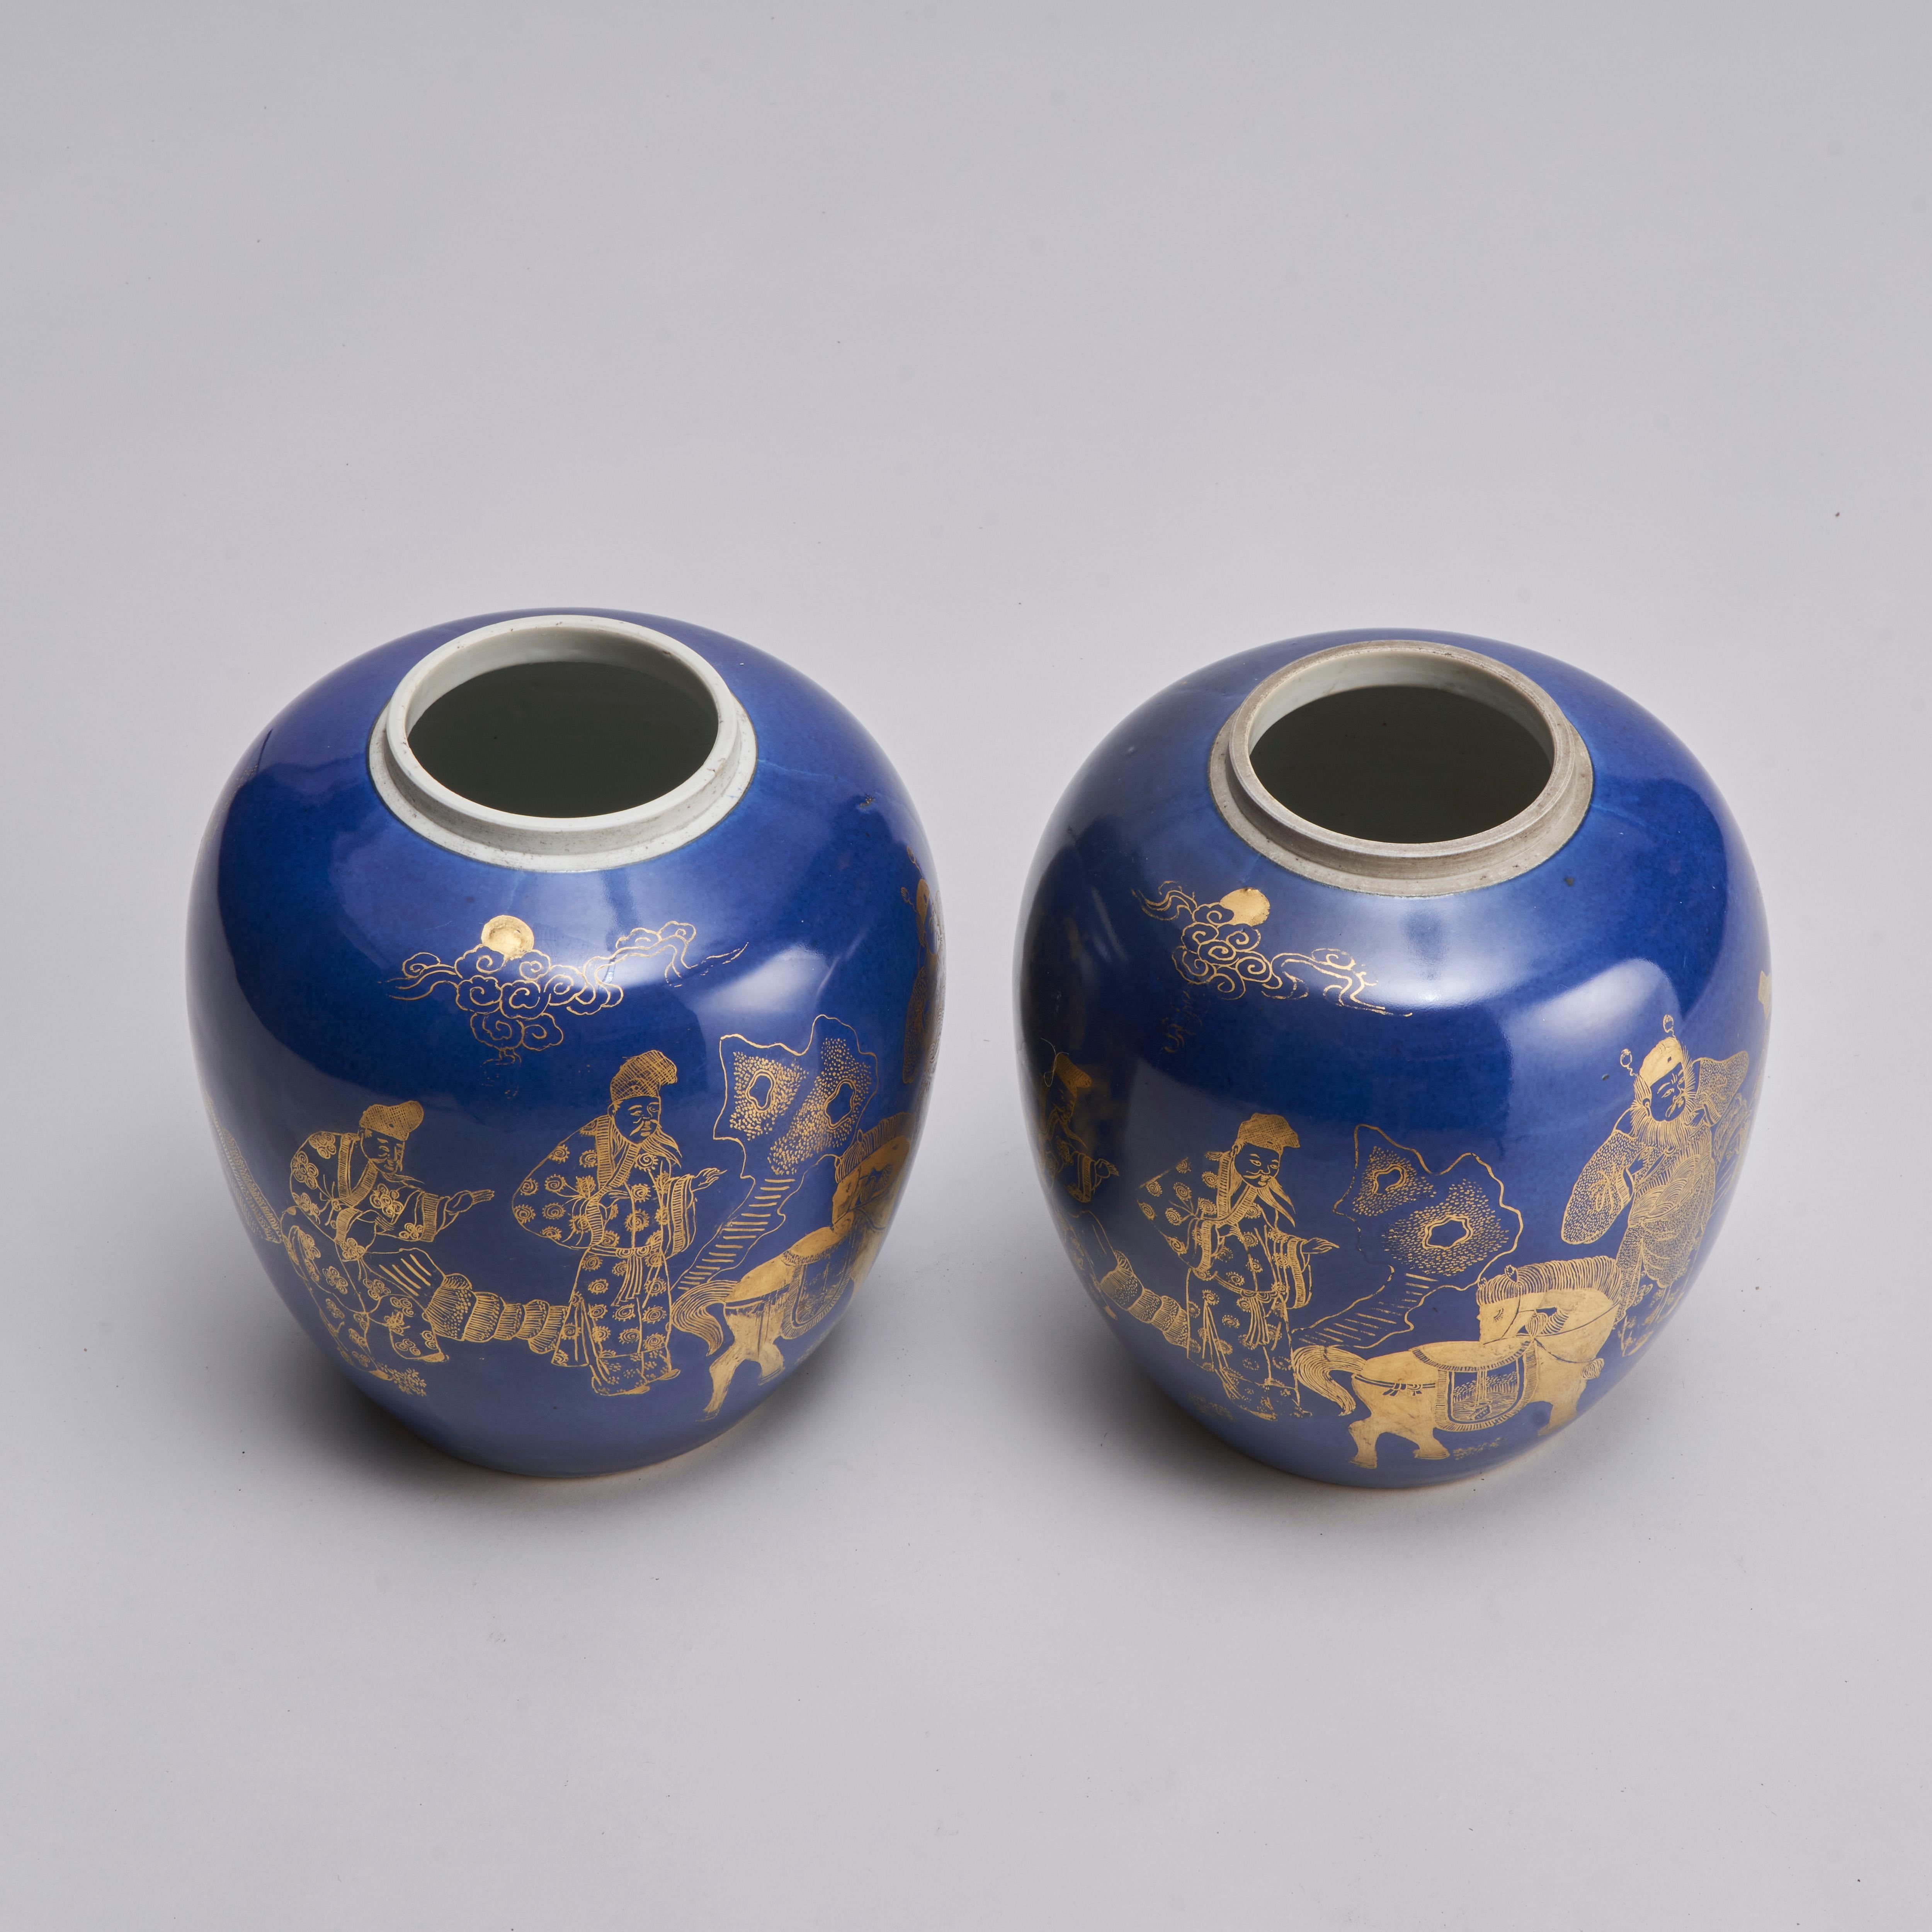 Paire de pots à gingembre chinois du 19e siècle de couleur bleu poudre. Tous deux avec un décor en or représentant trois érudits consultant un général, probablement Guan Yu, que l'on voit ici avec son cheval, le Lièvre rouge. Contactez-nous pour